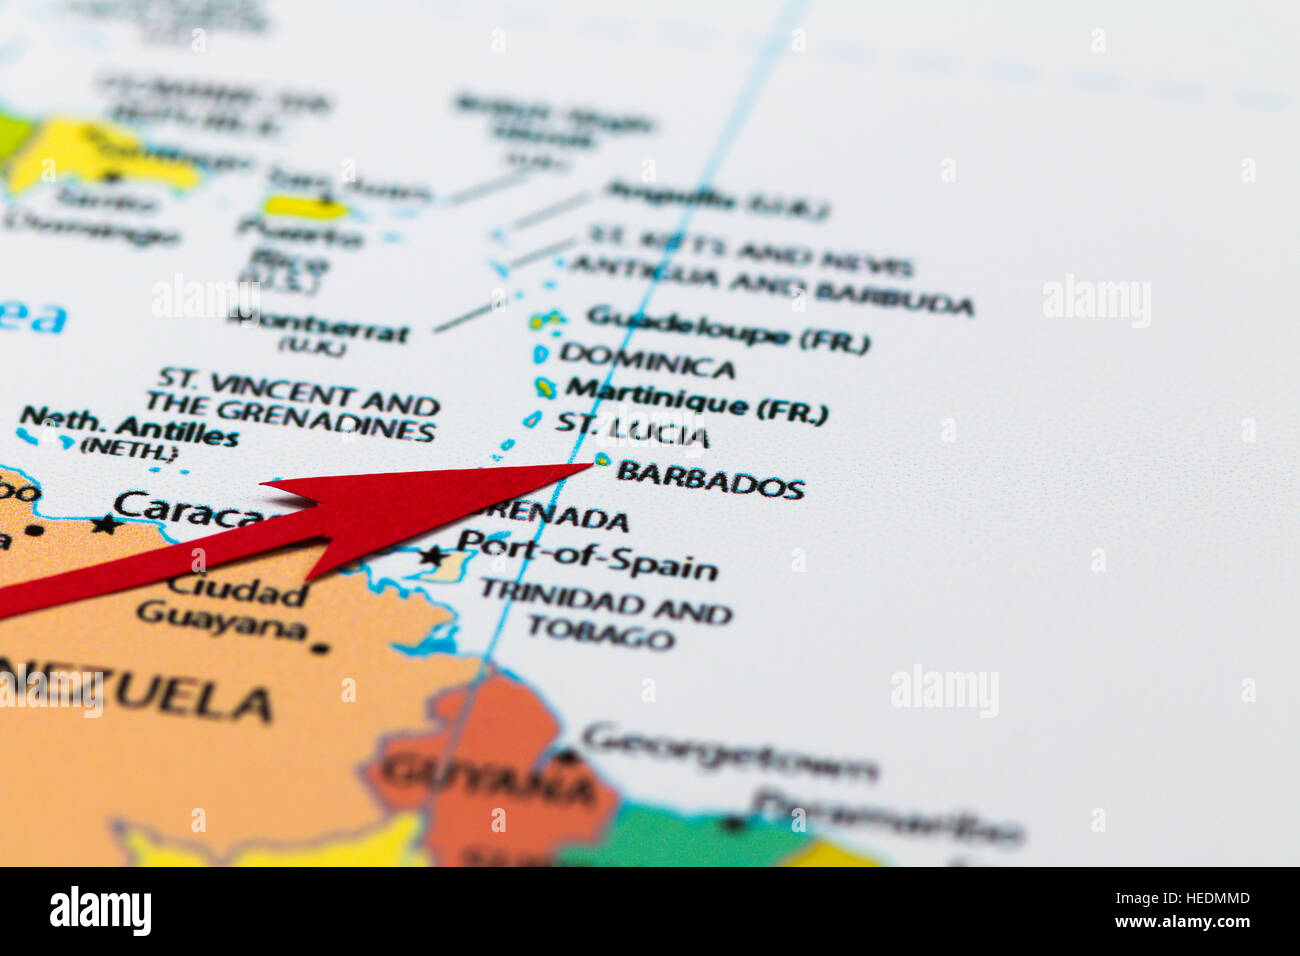 Flecha roja que apunta la isla de Barbados en el mapa del continente de América del Sur y el Caribe Foto de stock